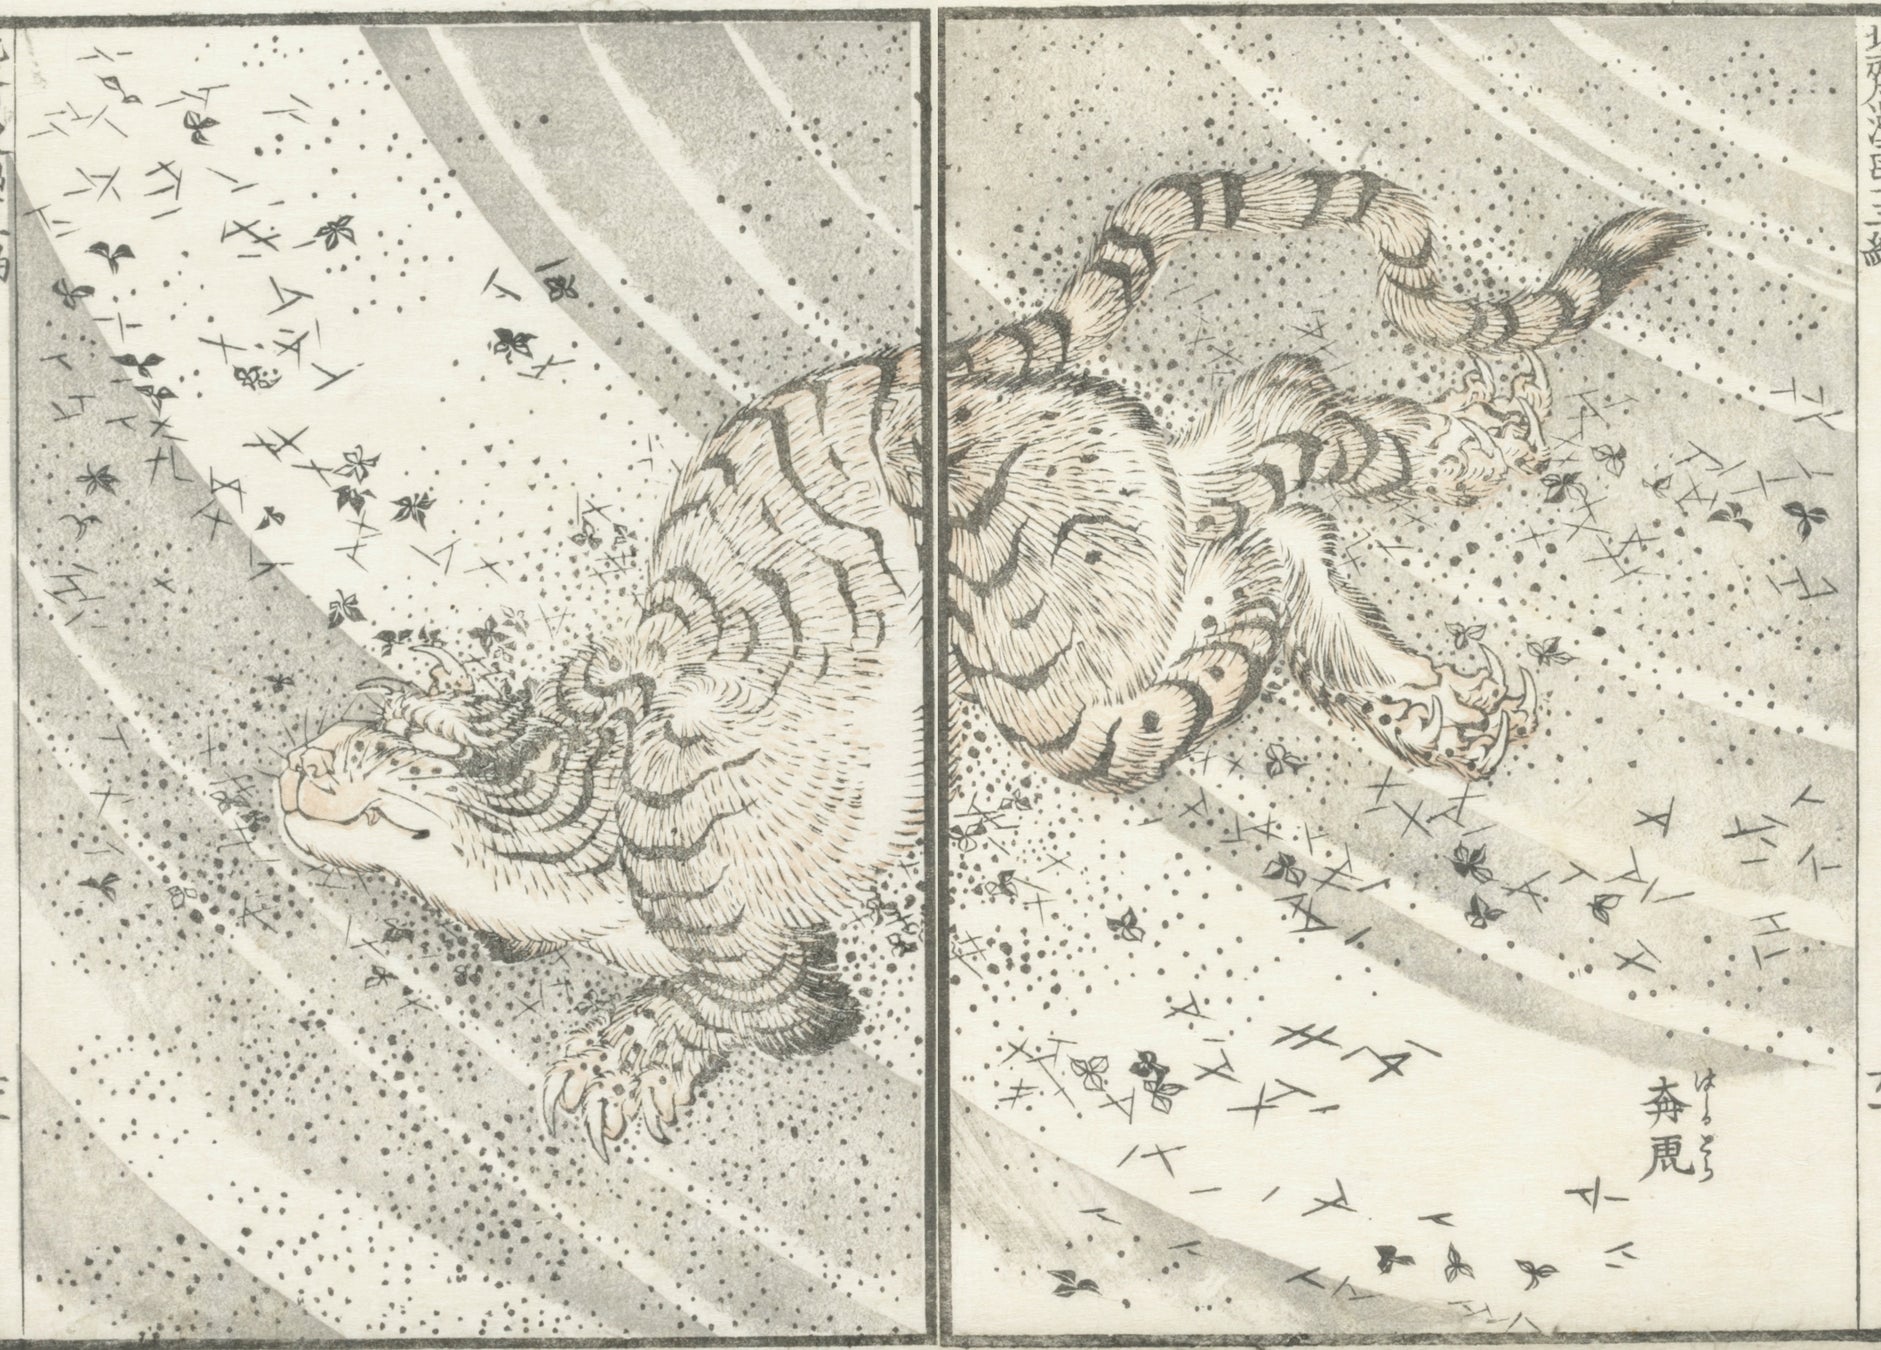 ベイクルーズによるアートギャラリーが虎ノ門に開業。初回展示は『北斎漫画』